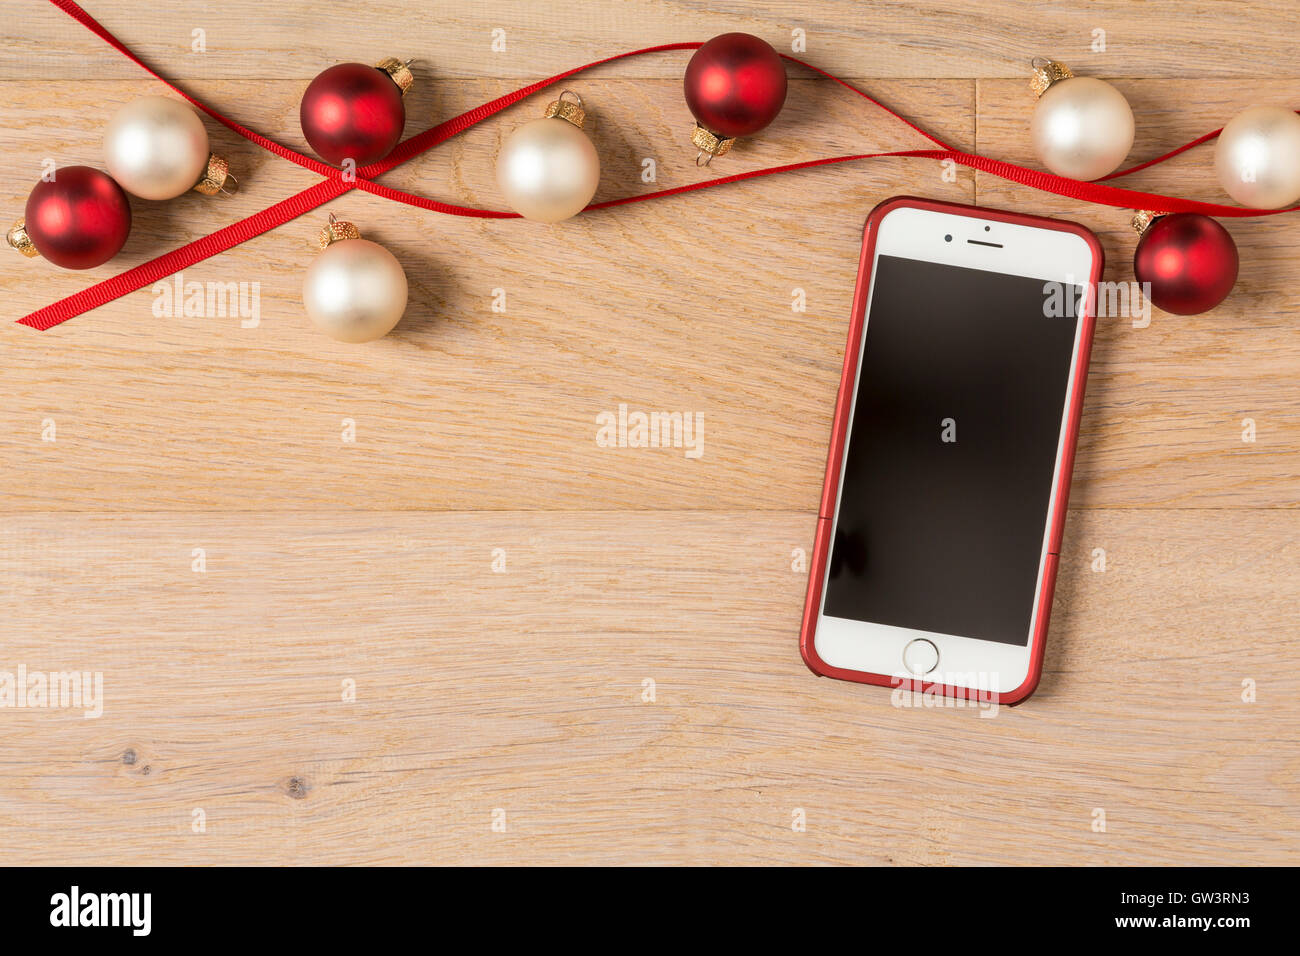 Immagini Natale Iphone 6.Telefono Cellulare Iphone 6 Con Per Le Feste Di Natale Decorazioni Su Legno Rustico Sfondo Foto Stock Alamy